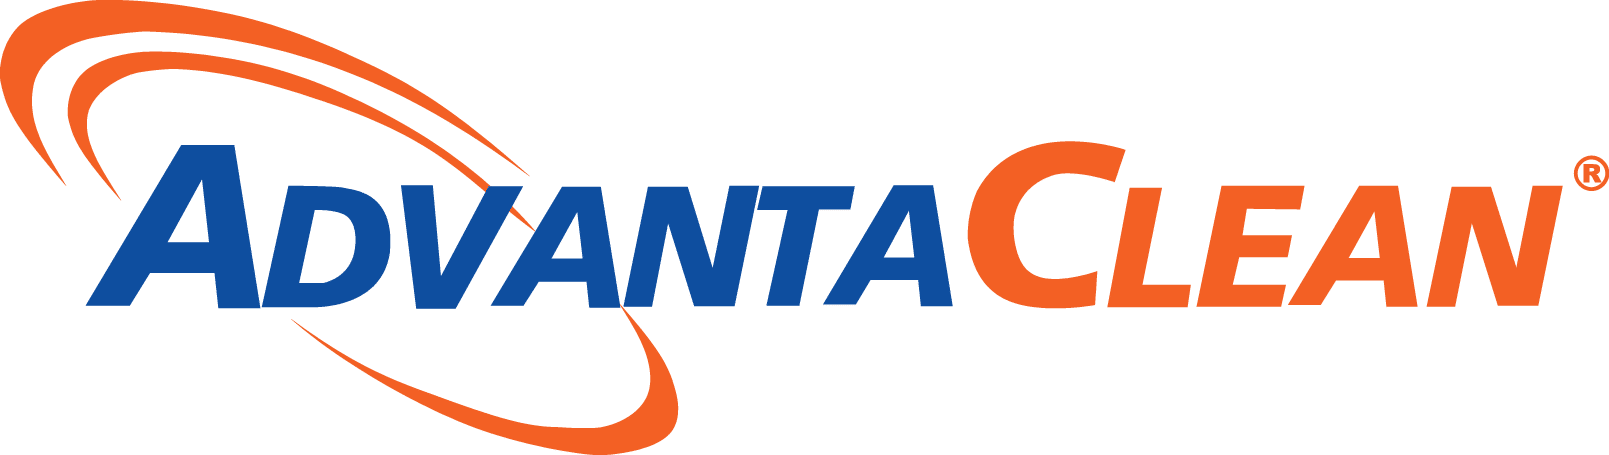 advanta clean franchise for sale